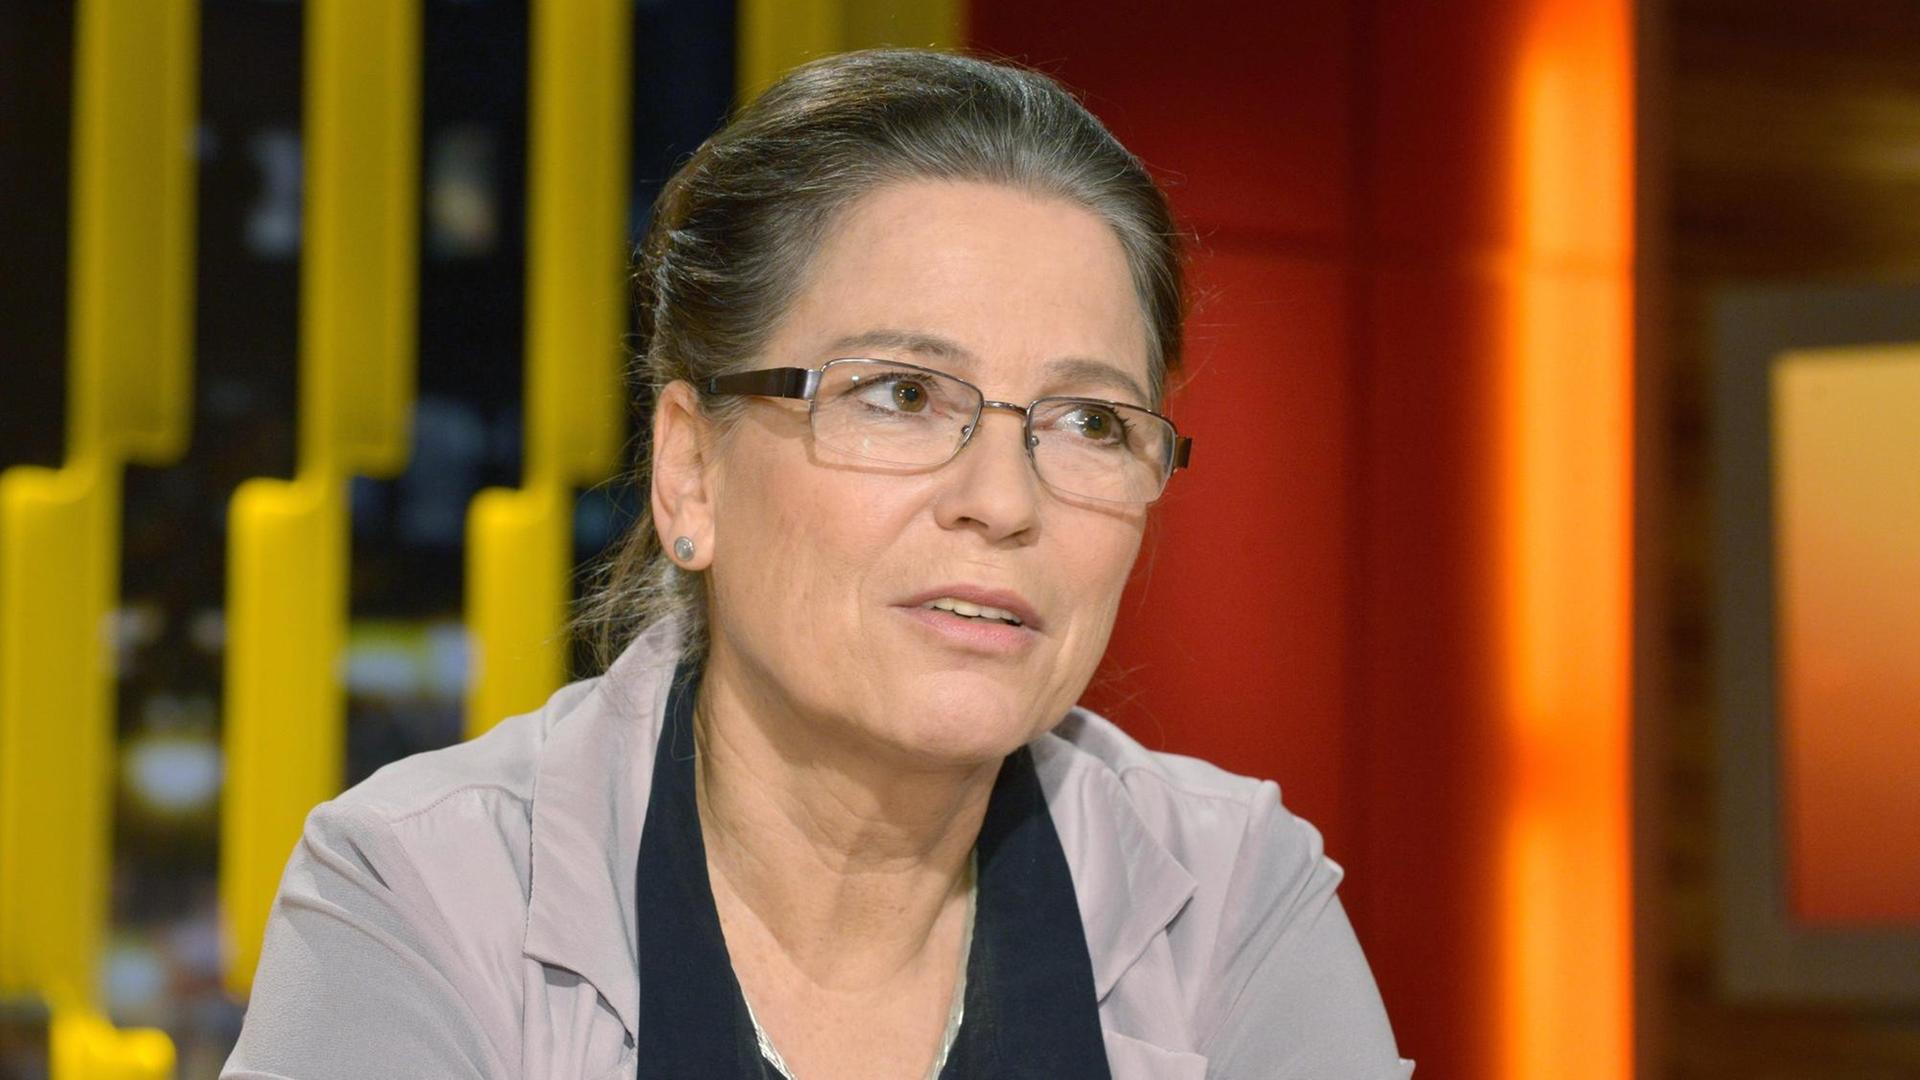 Ulrike Poppe (geb. Wick), Bürgerrechtlerin und DDR-Oppositionelle, erste Brandenburger Landesbeauftragte zur Aufarbeitung der Folgen der kommunistischen Diktatur seit dem 1. März 2010.